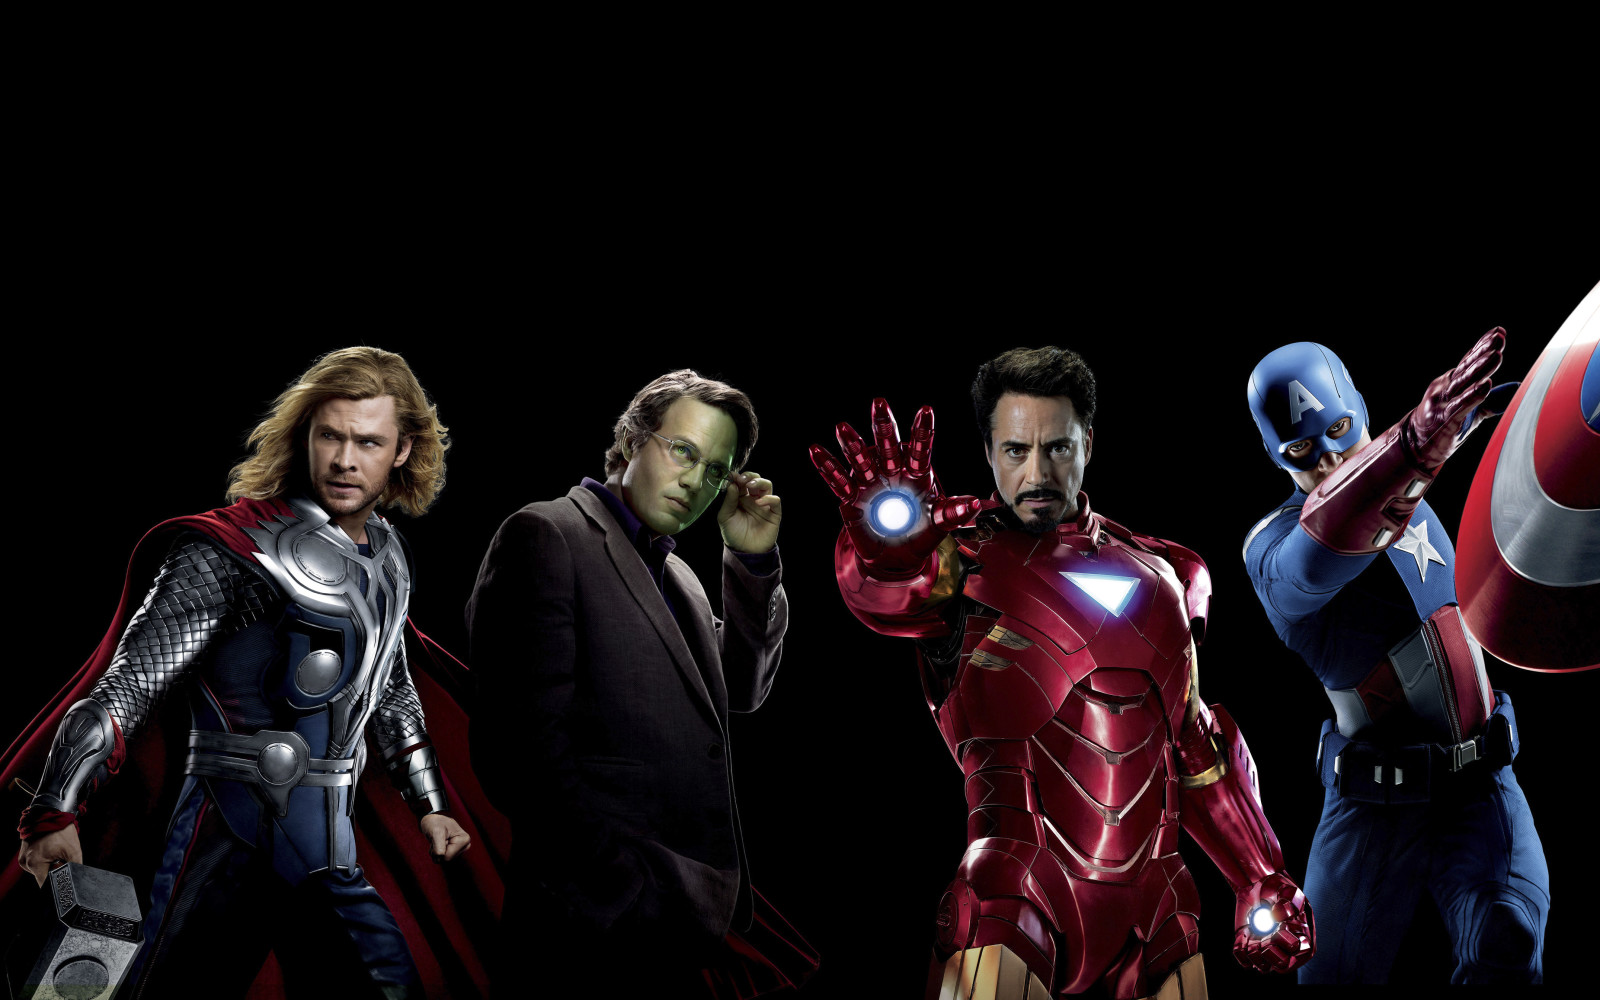 latar belakang hitam, Keajaiban, Fiksi, Pahlawan super, Thor, Kapten Amerika, Chris Hemsworth, Chris Evans